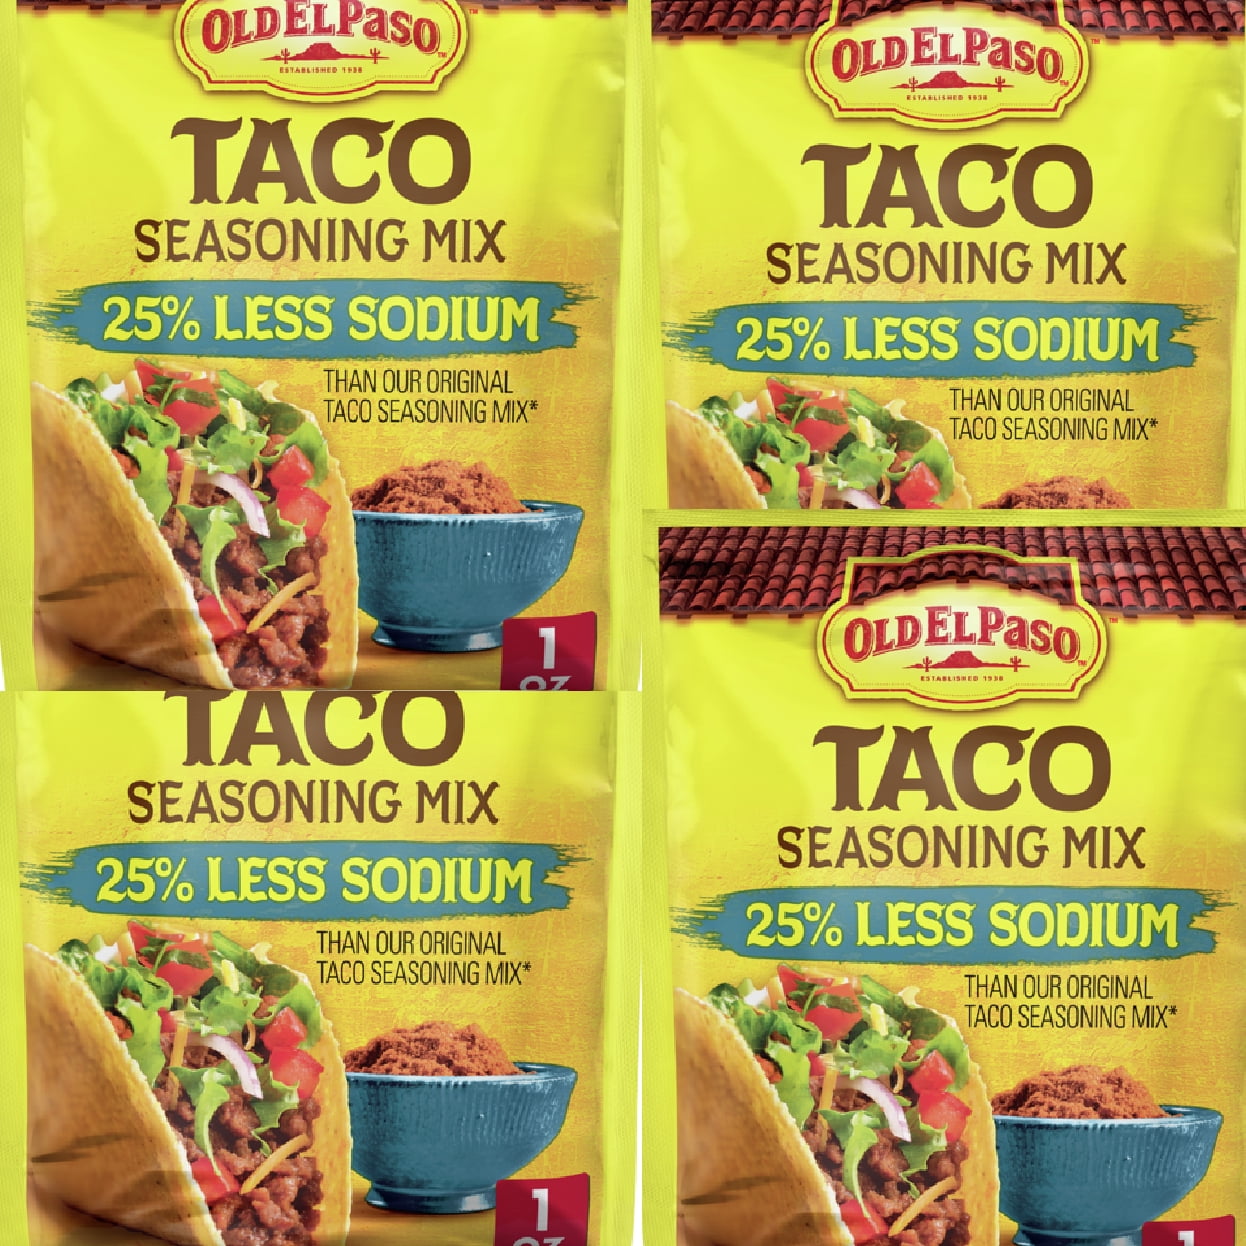 Old El Paso 25% Less Sodium Taco Seasoning Mix, 1 oz